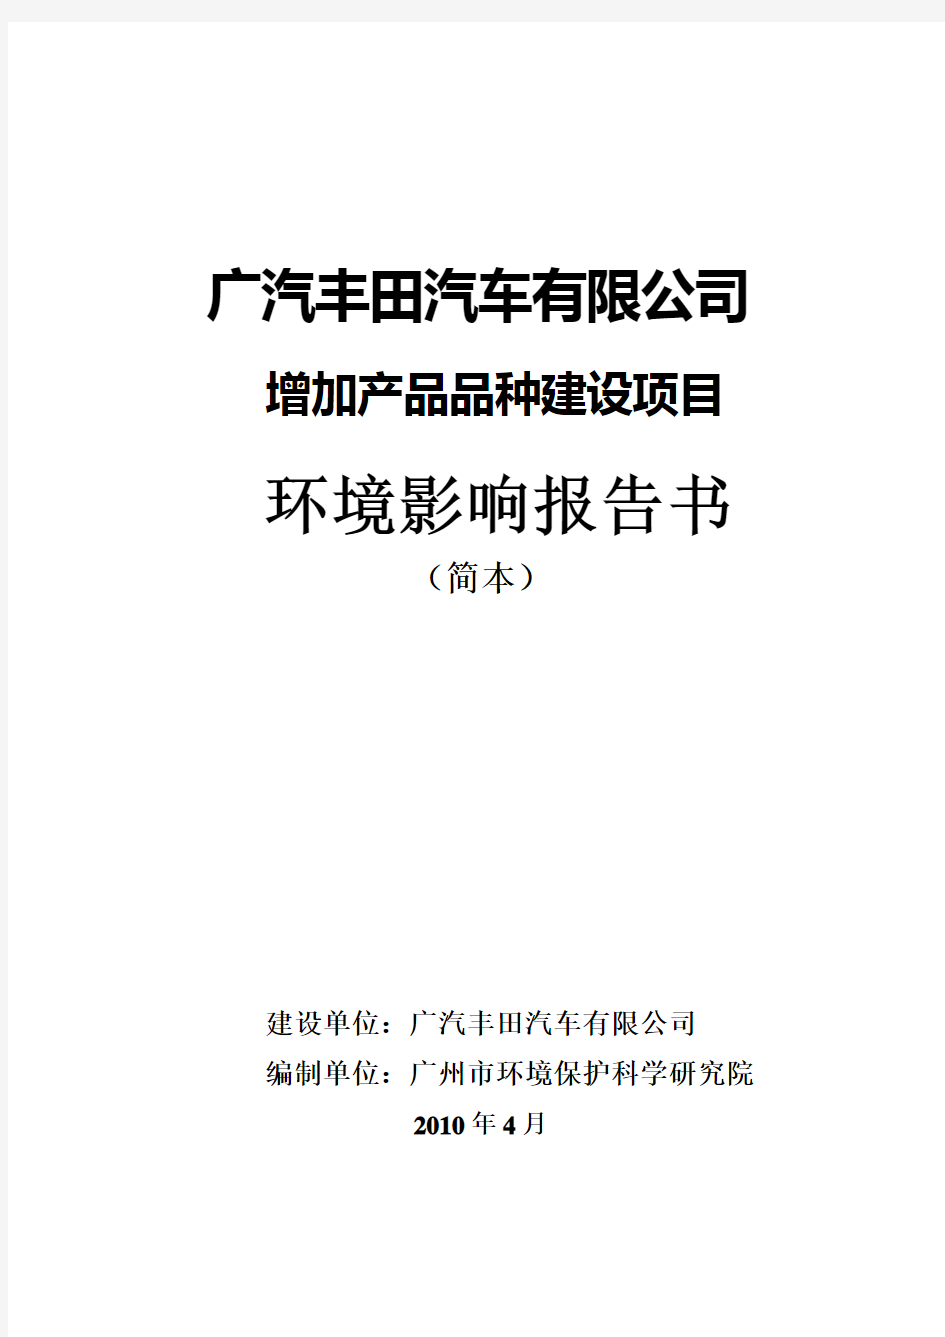 1-《广汽丰田汽车有限公司增加产品品种建设项目环境影响报告书